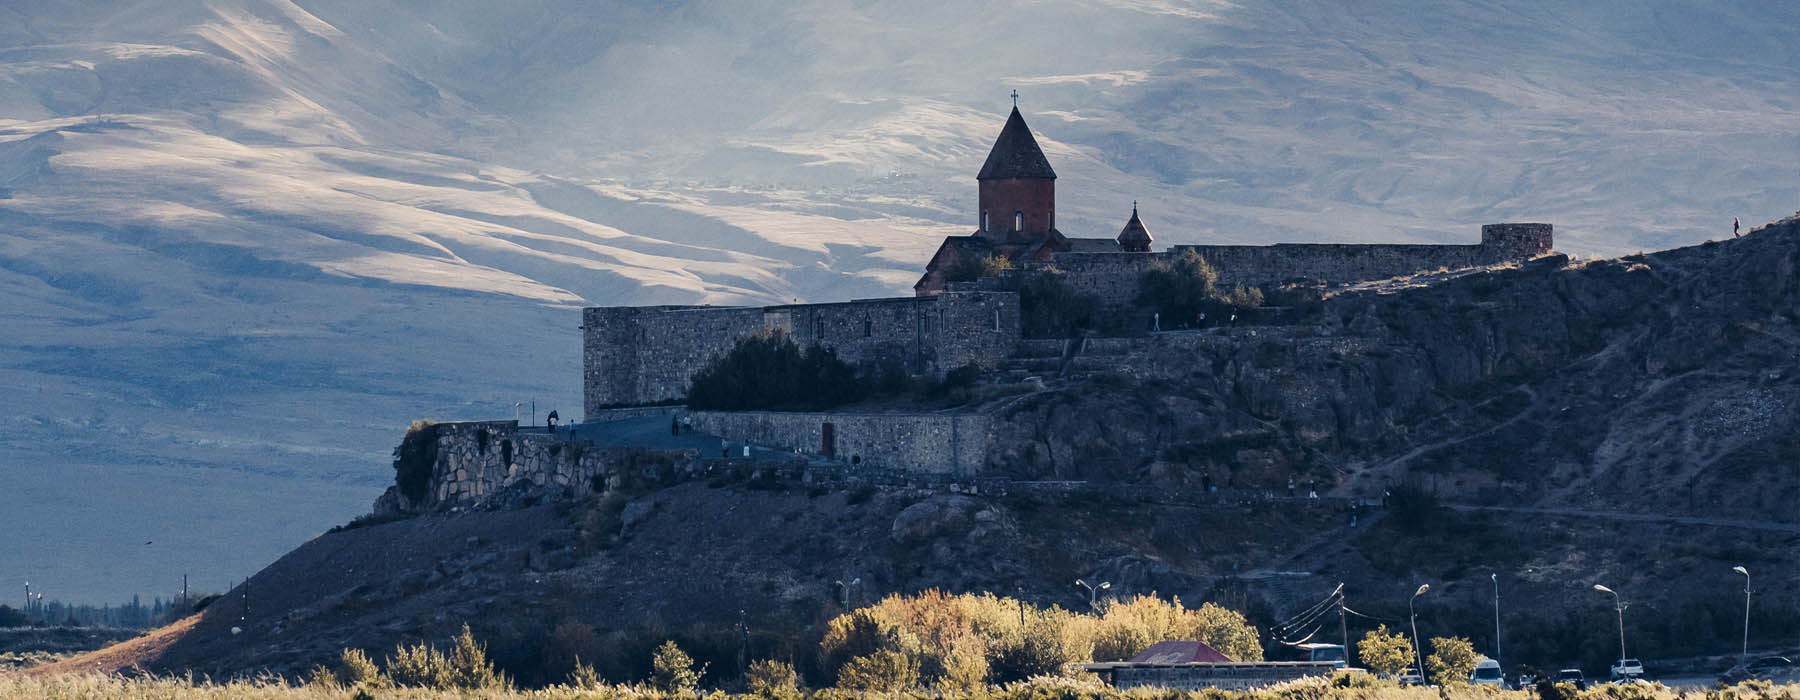 Les grands voyages Arménie